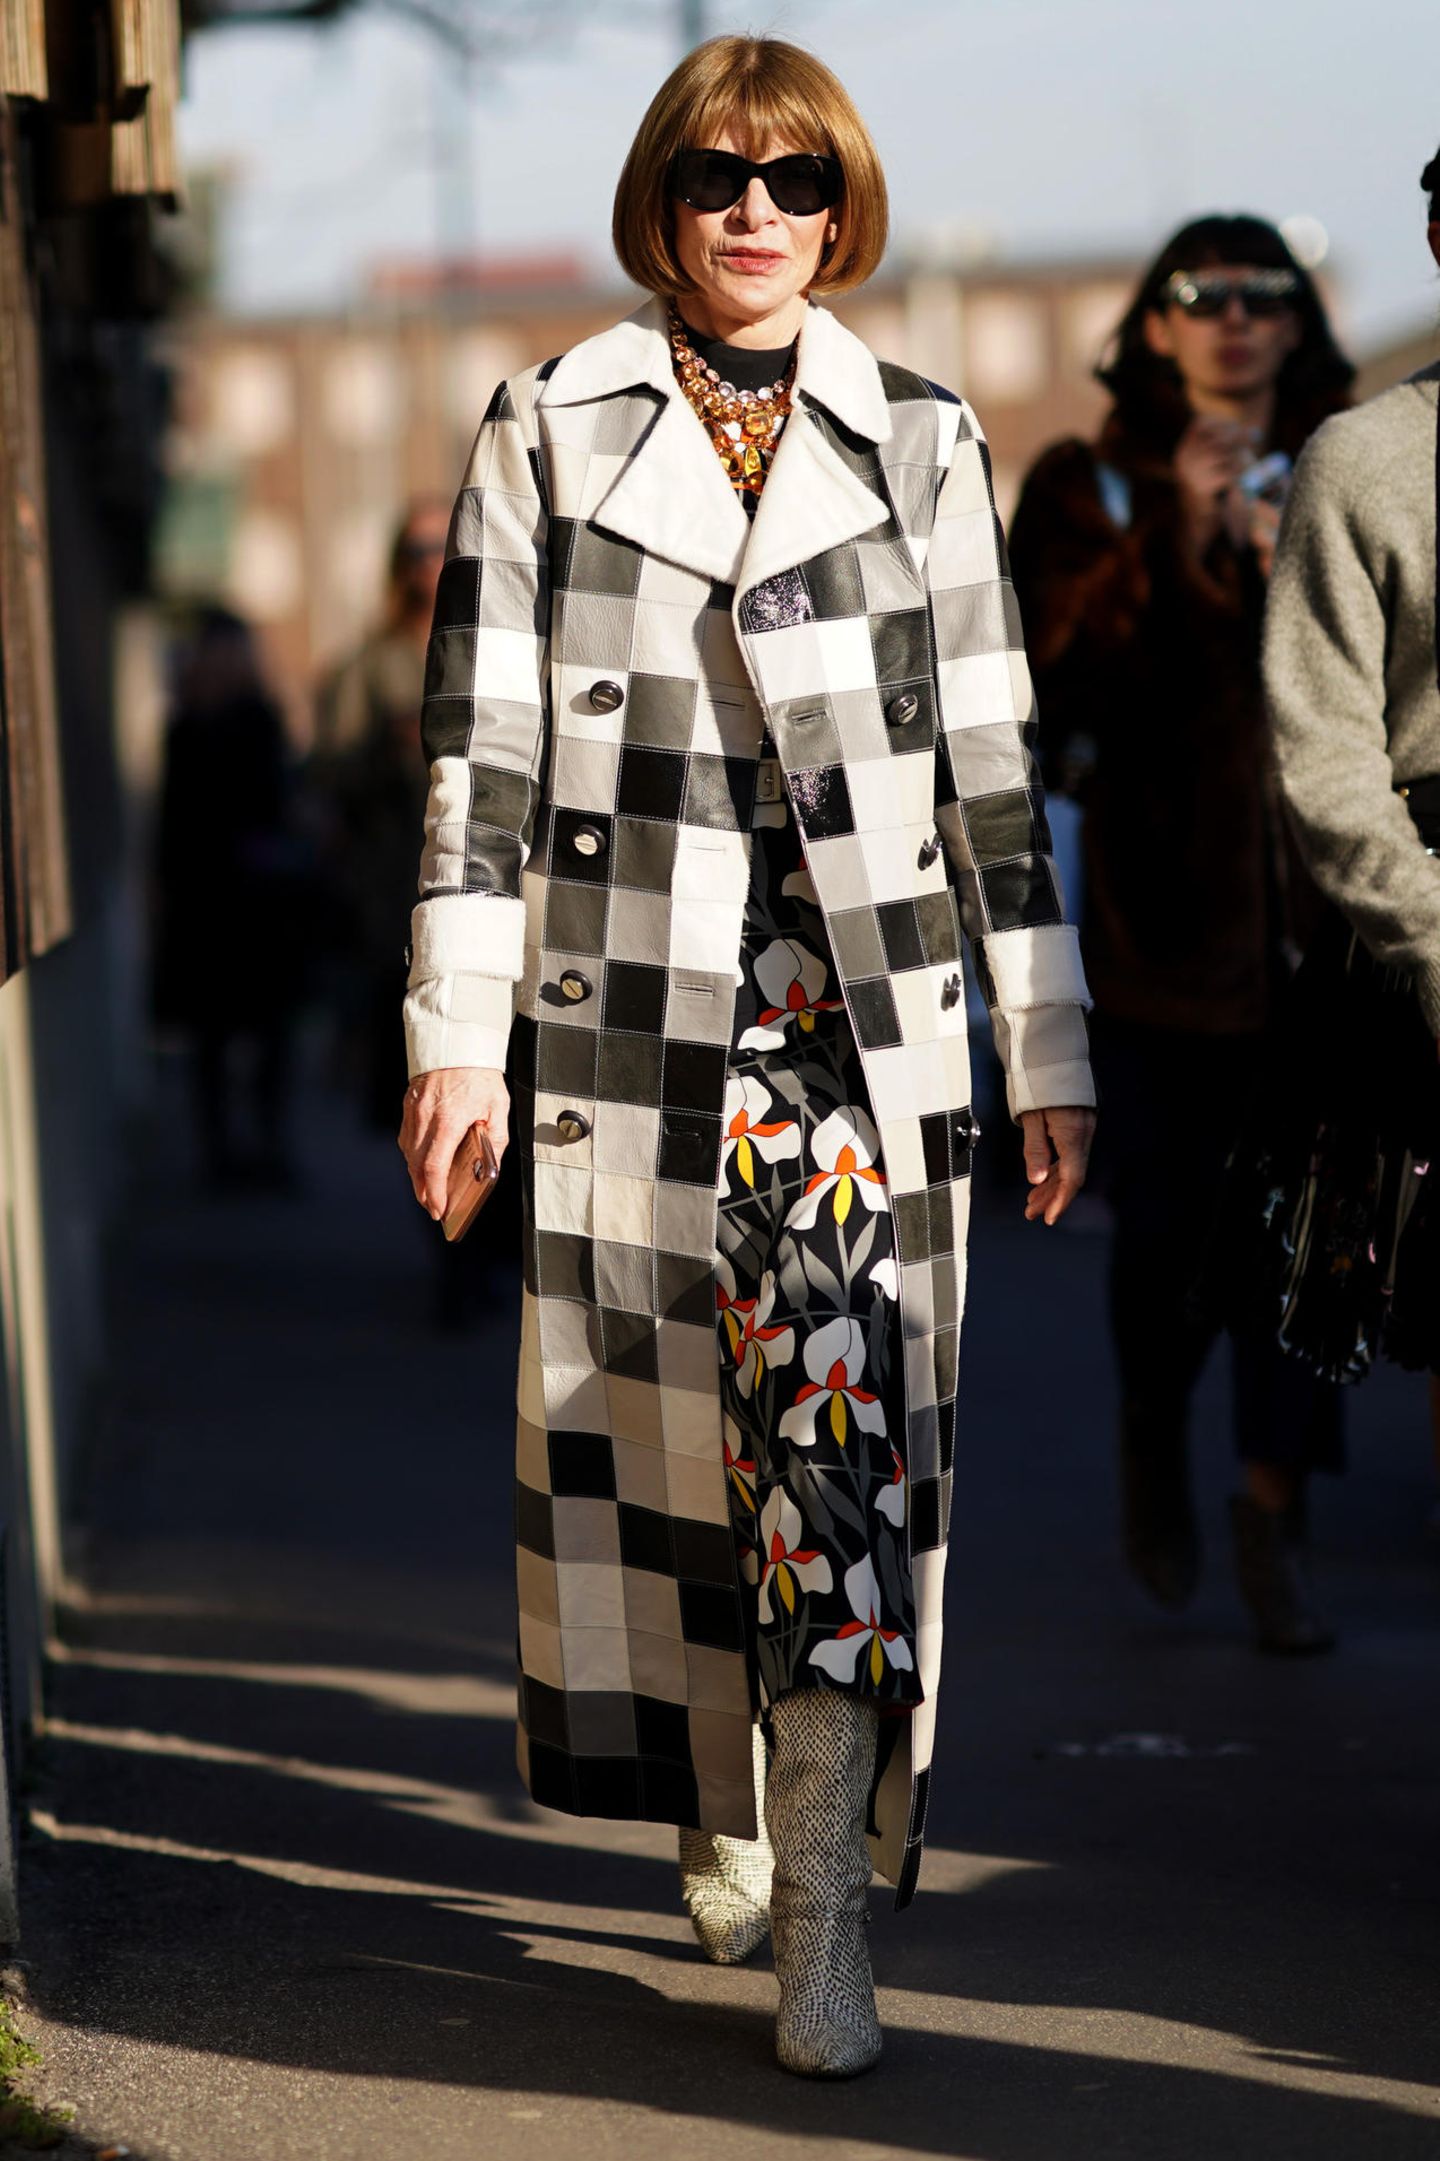 Bei der Fashion Week in Mailand macht Anna Wintour ihrem Namen als eine der einflussreichsten Frauen der Modebranche alle Ehre: Sie trägt ein Kleid mit Blumendruck, einen schwarz-weiß karierten langen Trenchcoat und stylishe Stiefel im Schlangendesign. Ihren glamourösen Look rundet sie mit einer Sonnenbrille und einer mit bunten Juwelen besetzten Statementkette ab.